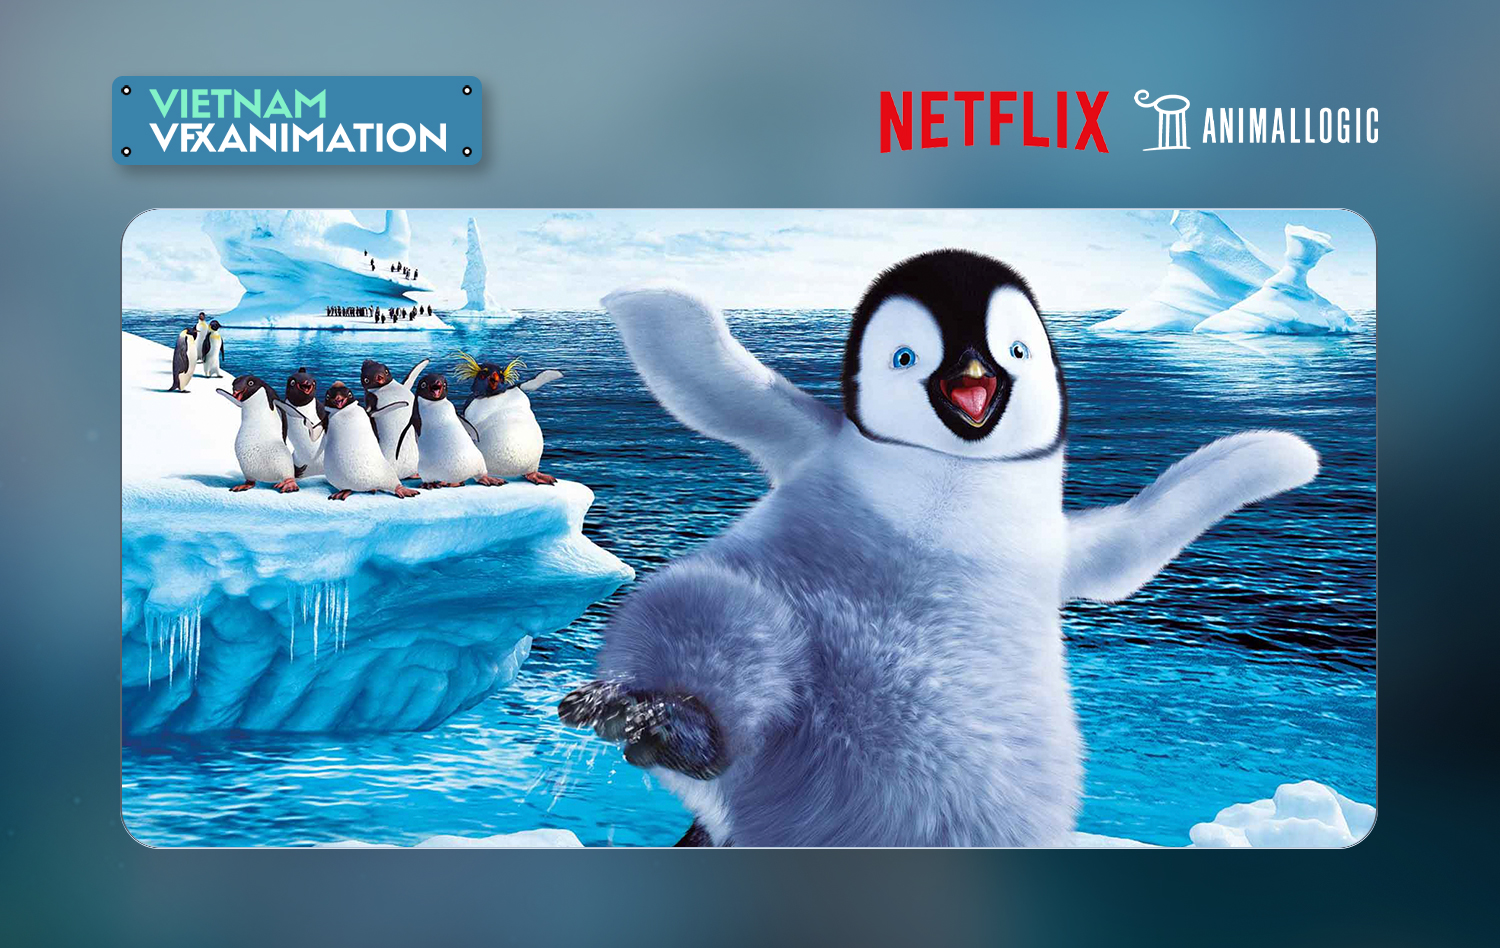 Netflix mua lại Animal Logic: “Cú bắt tay” tiến sâu vào thế giới Animation  - Vfx-Animation